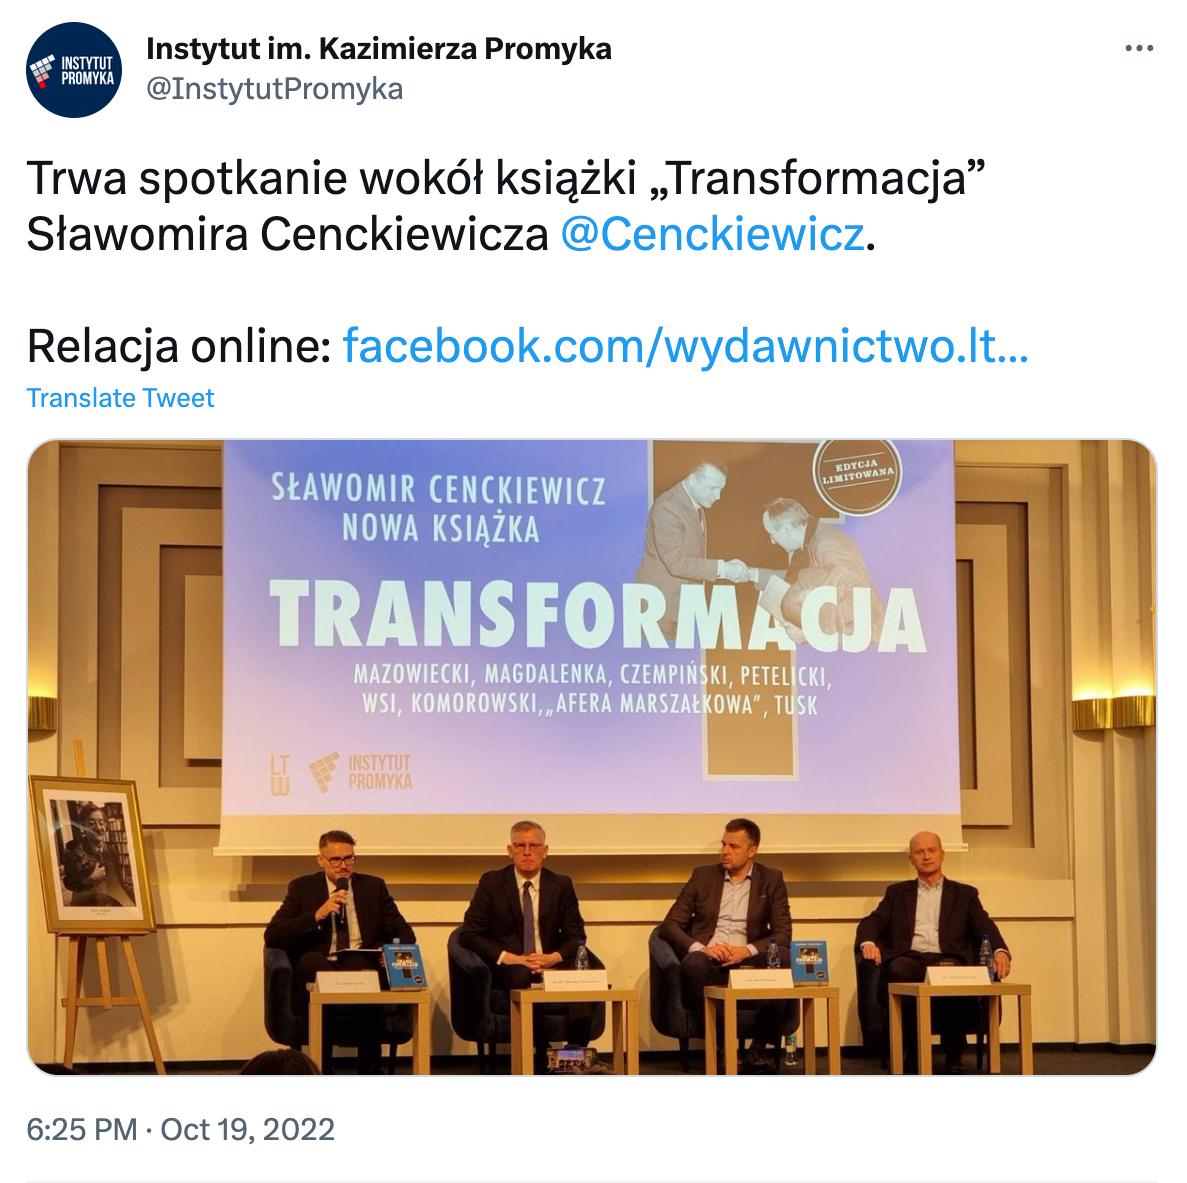 Tweet Instytutu Promyka ze zdjęciem z promocji książki Sławomira Cenckiewicza.